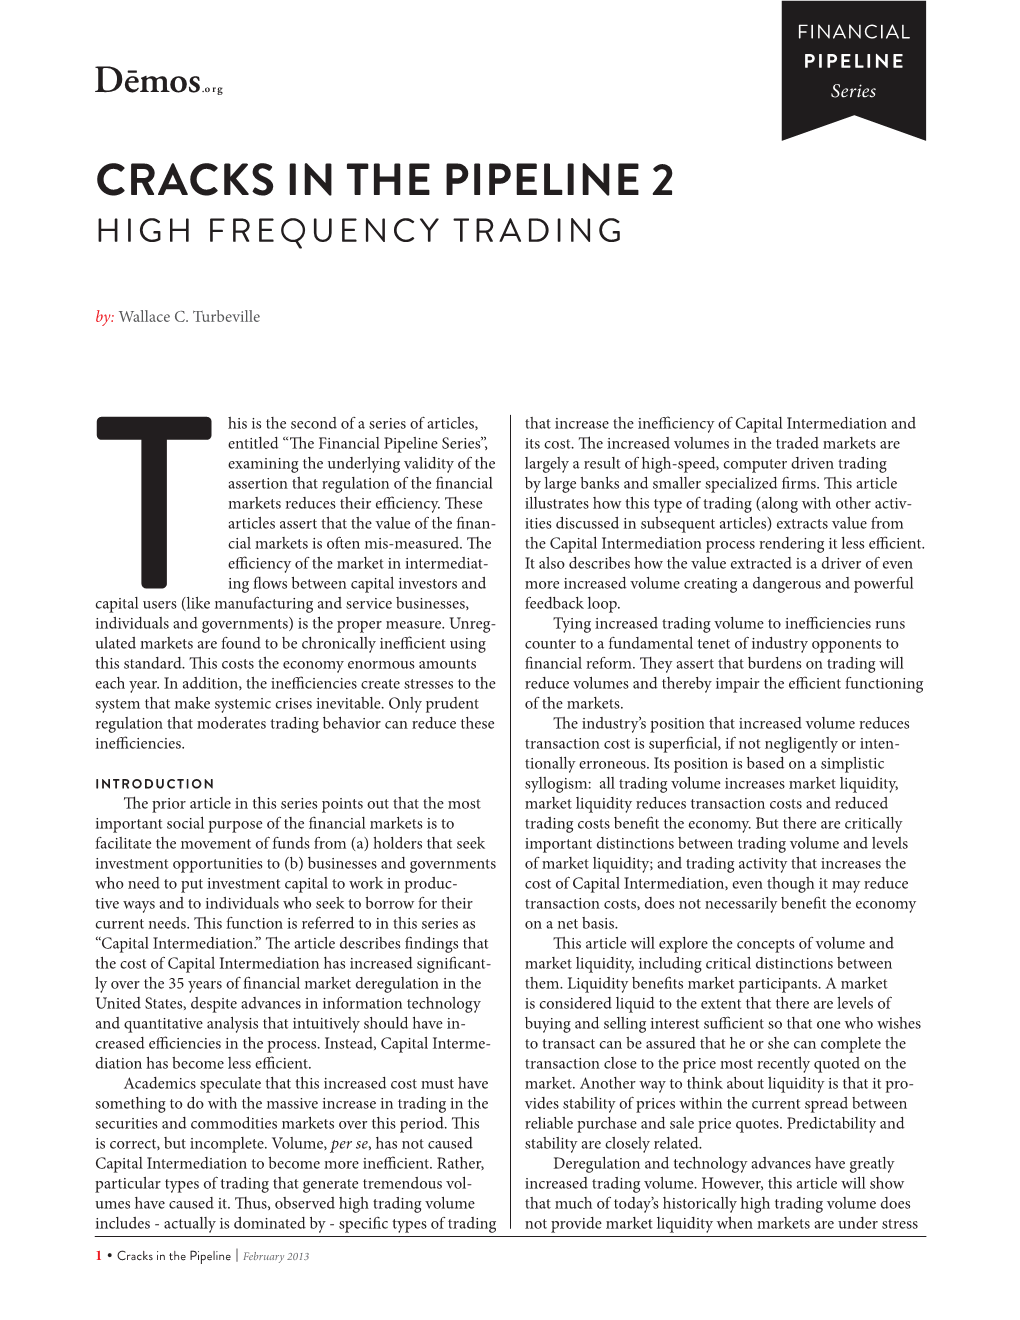 Cracks in the Pipeline 2